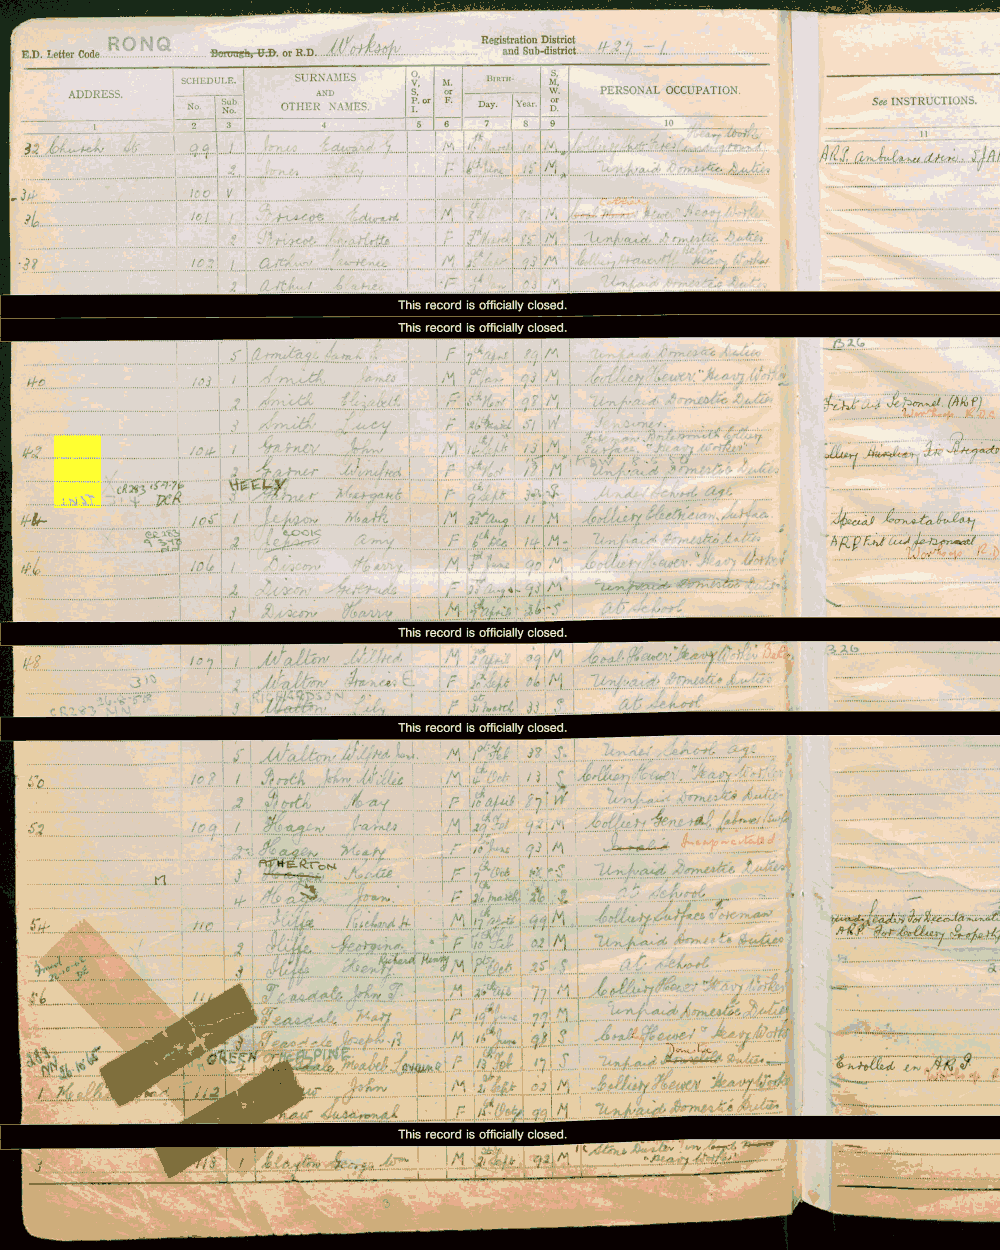 1939 census returns for Jack and Winifred Garner and Margaret Garner